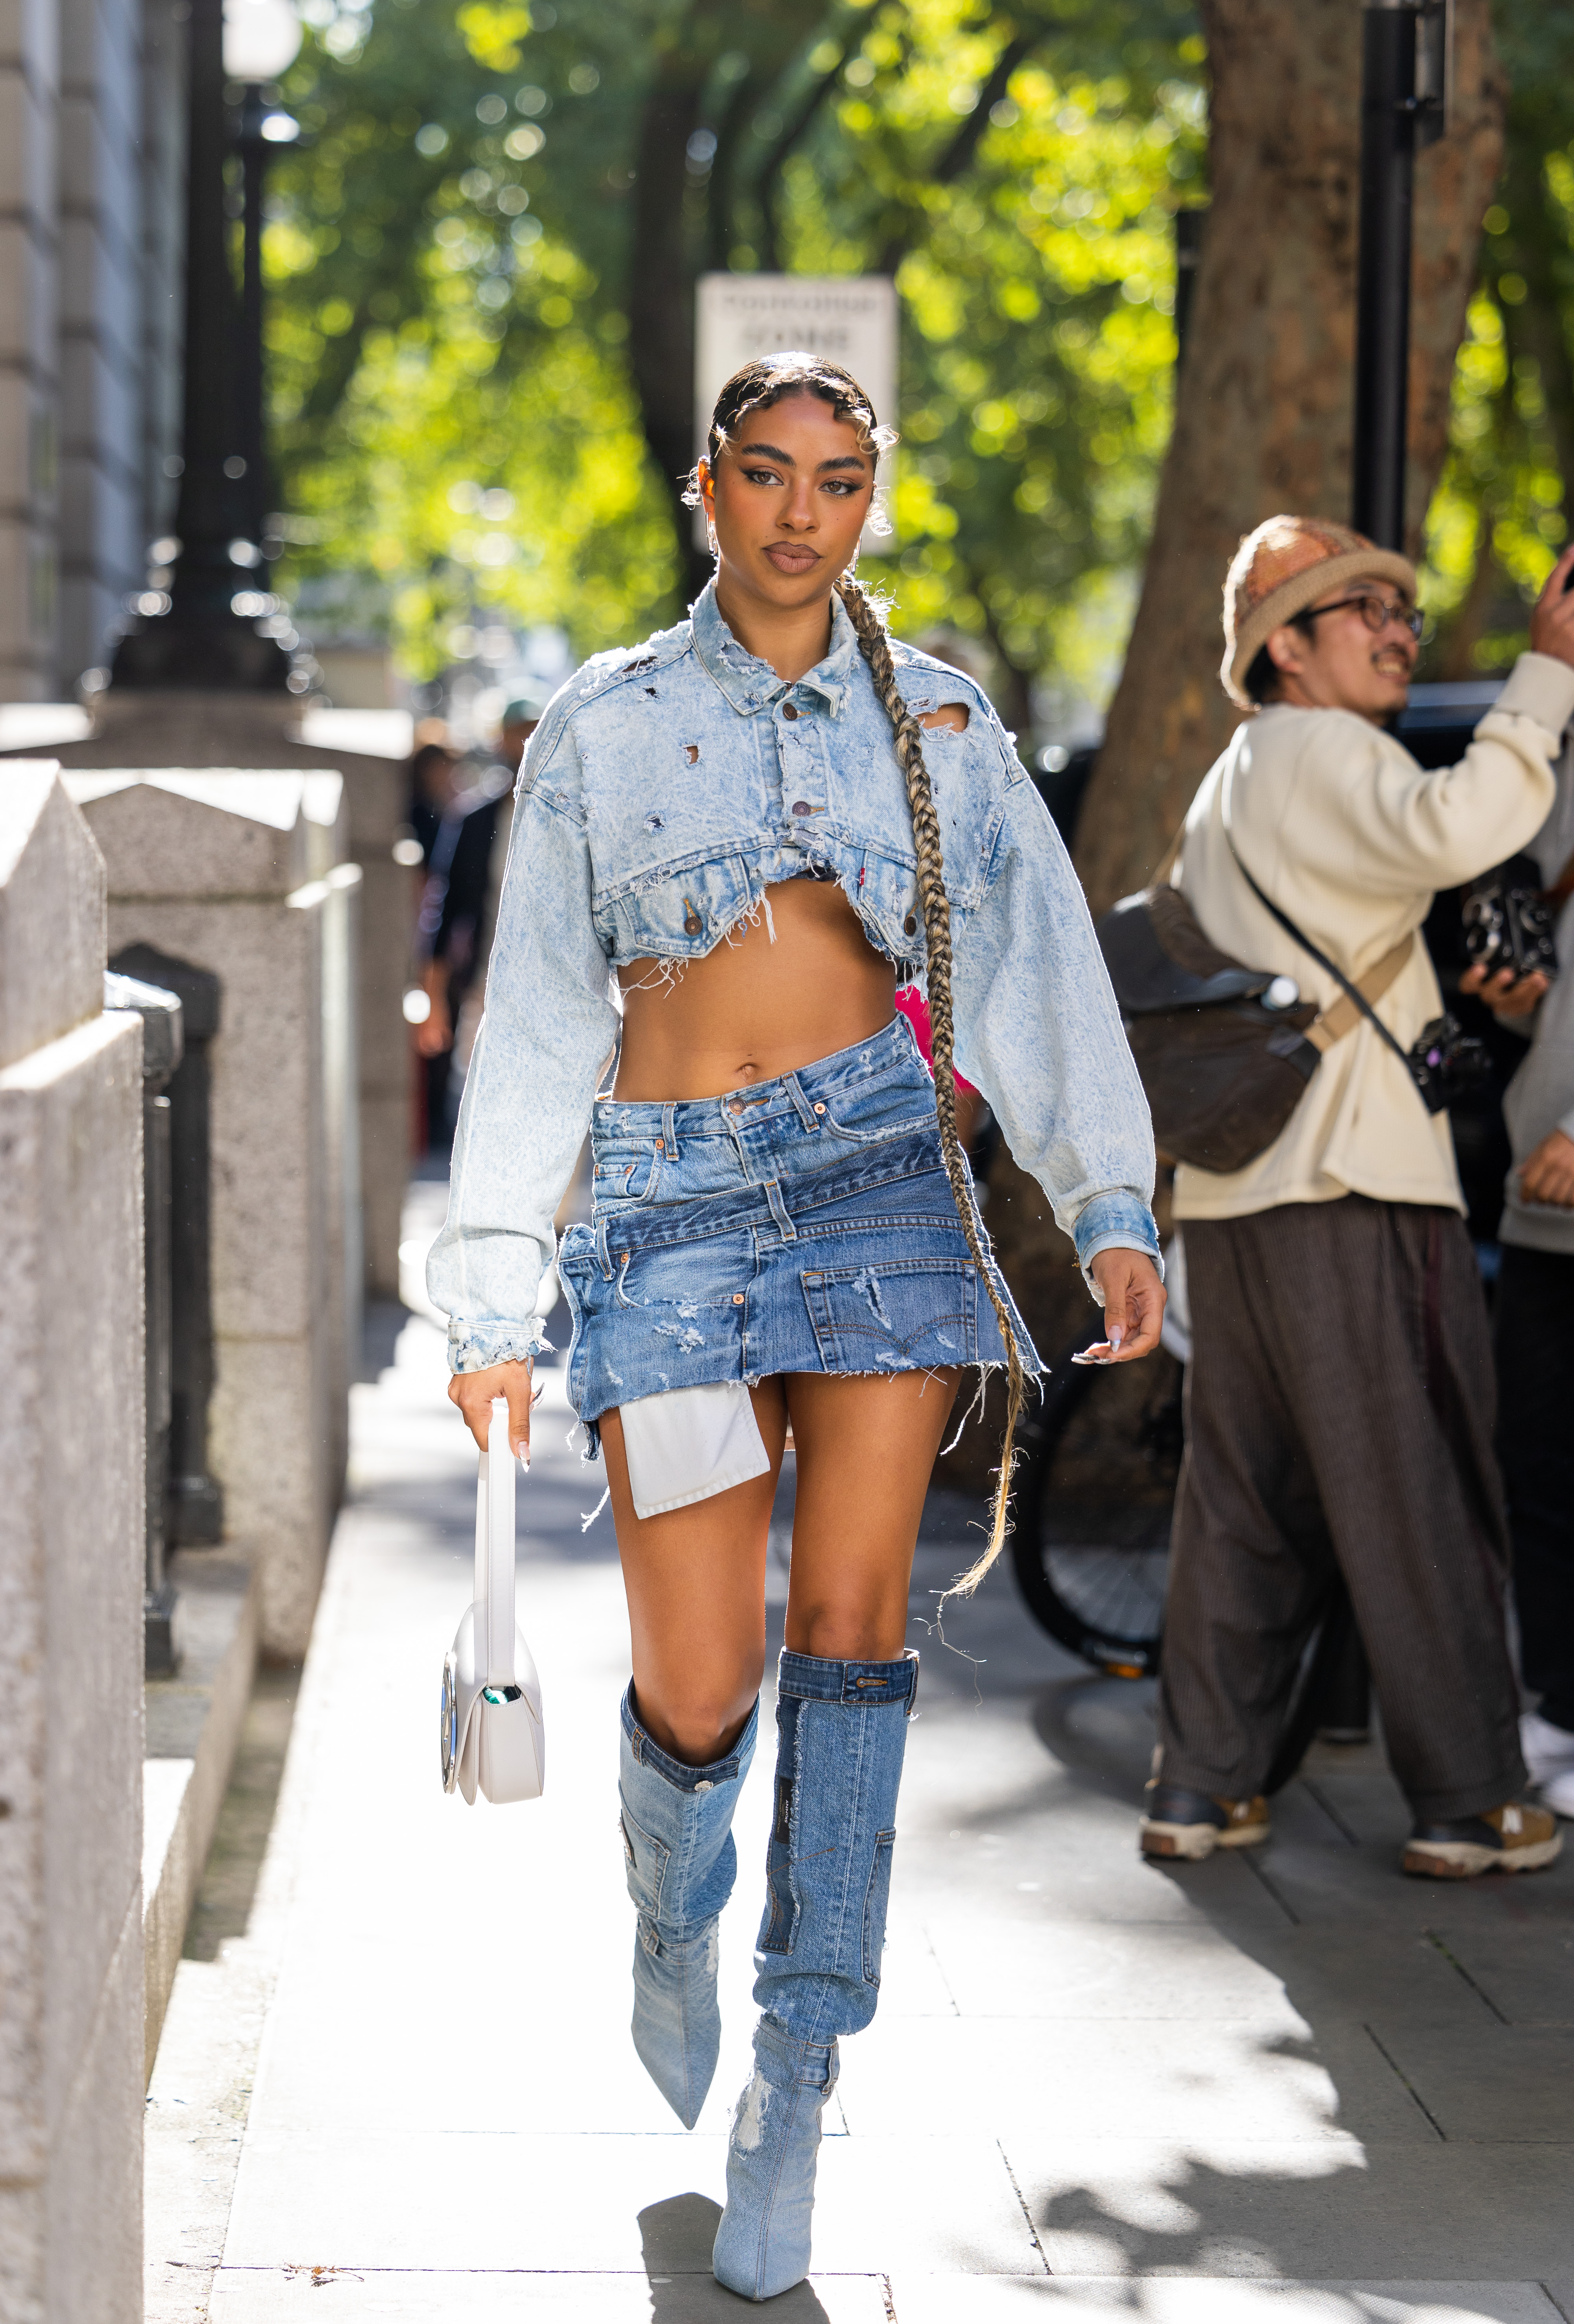 Garota usando look com jaqueta jeans cropped, minissaia jeans e bota jeans na semana de moda de Londres